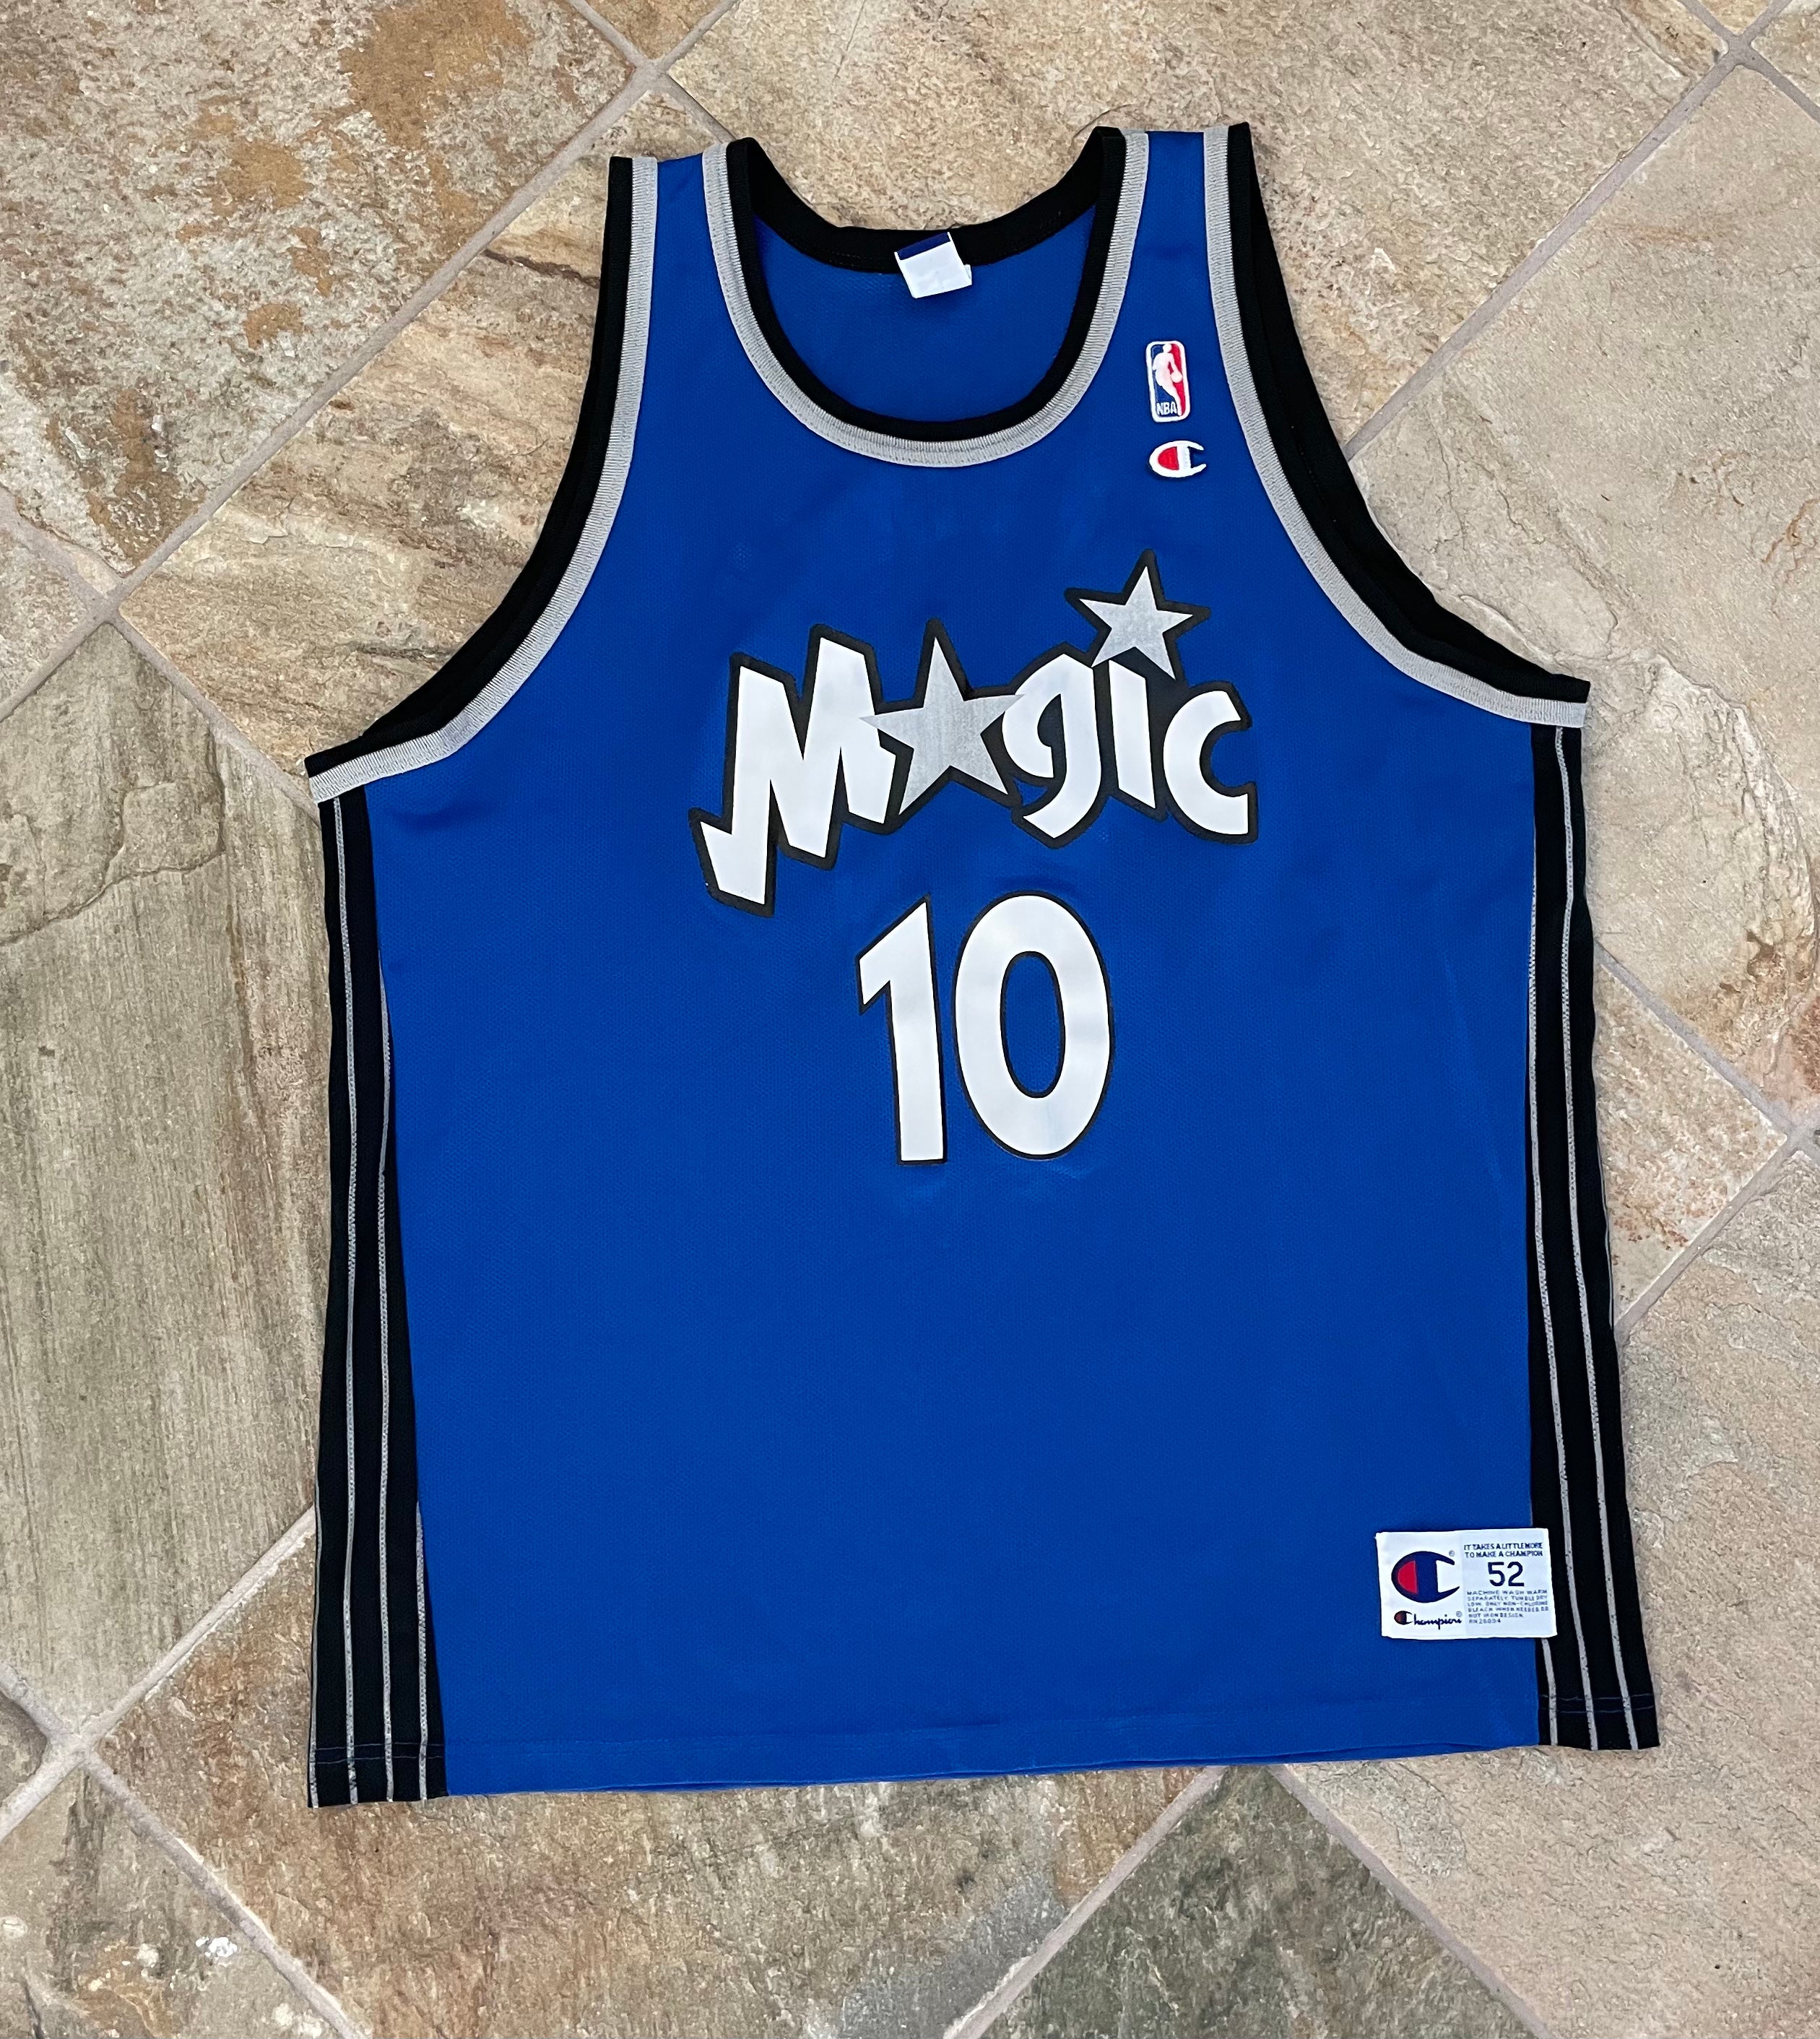 Champion Orlando Magic NBA Fan Shop